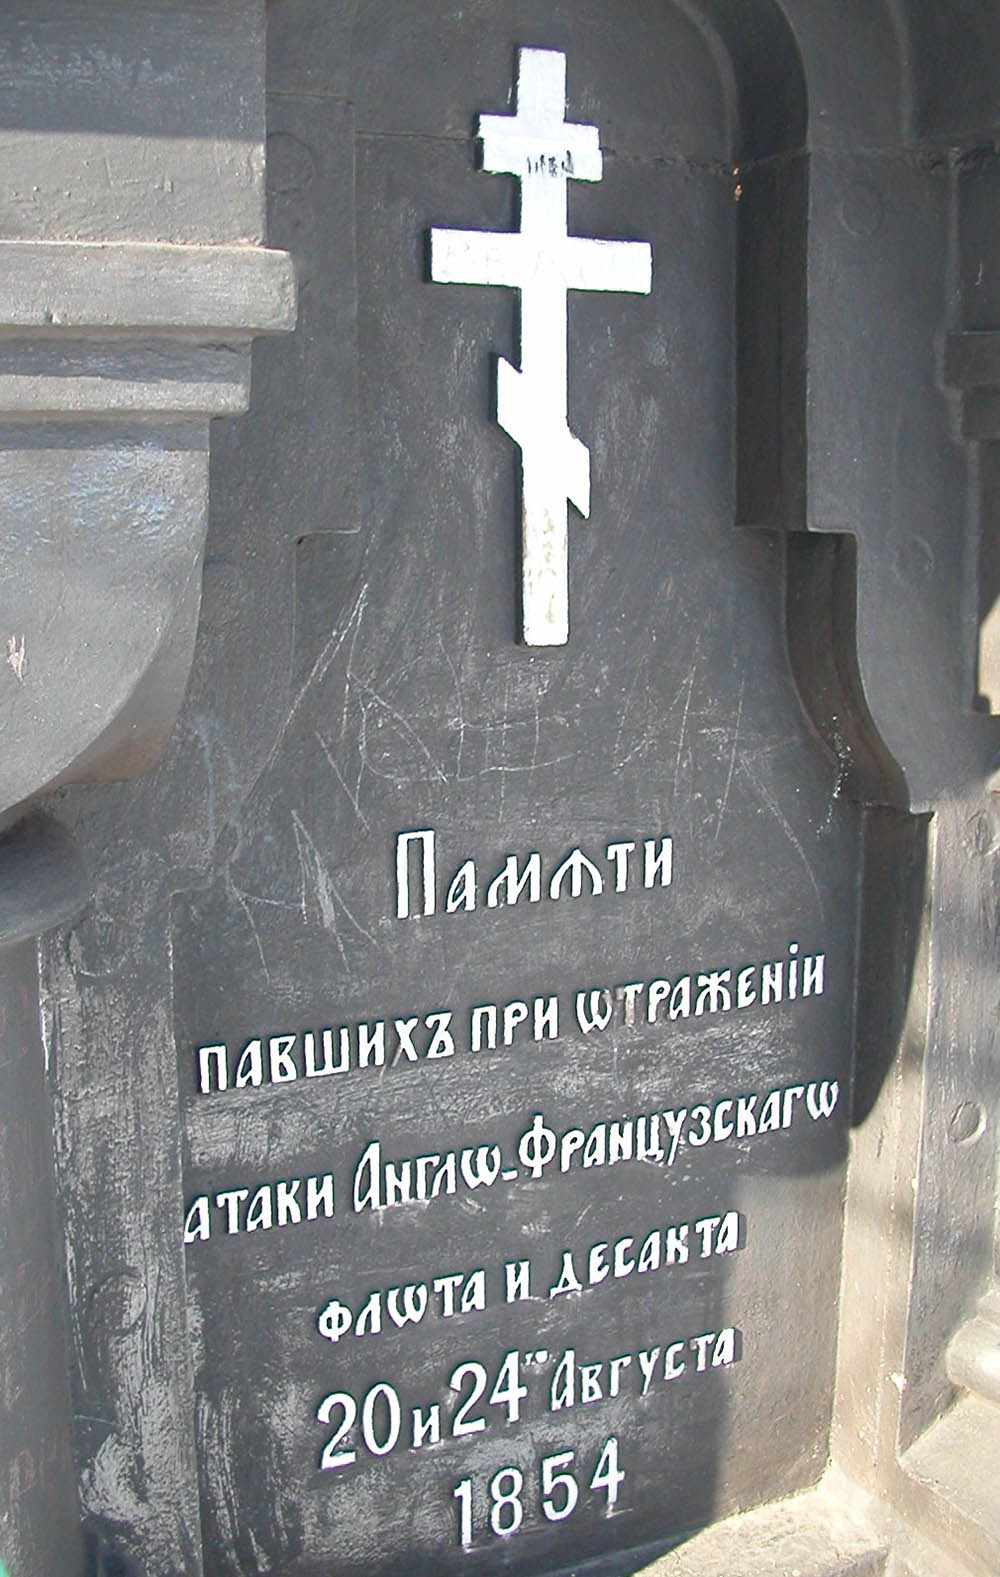 Monument Beleg van Petropavlovsk-Kamchatsky